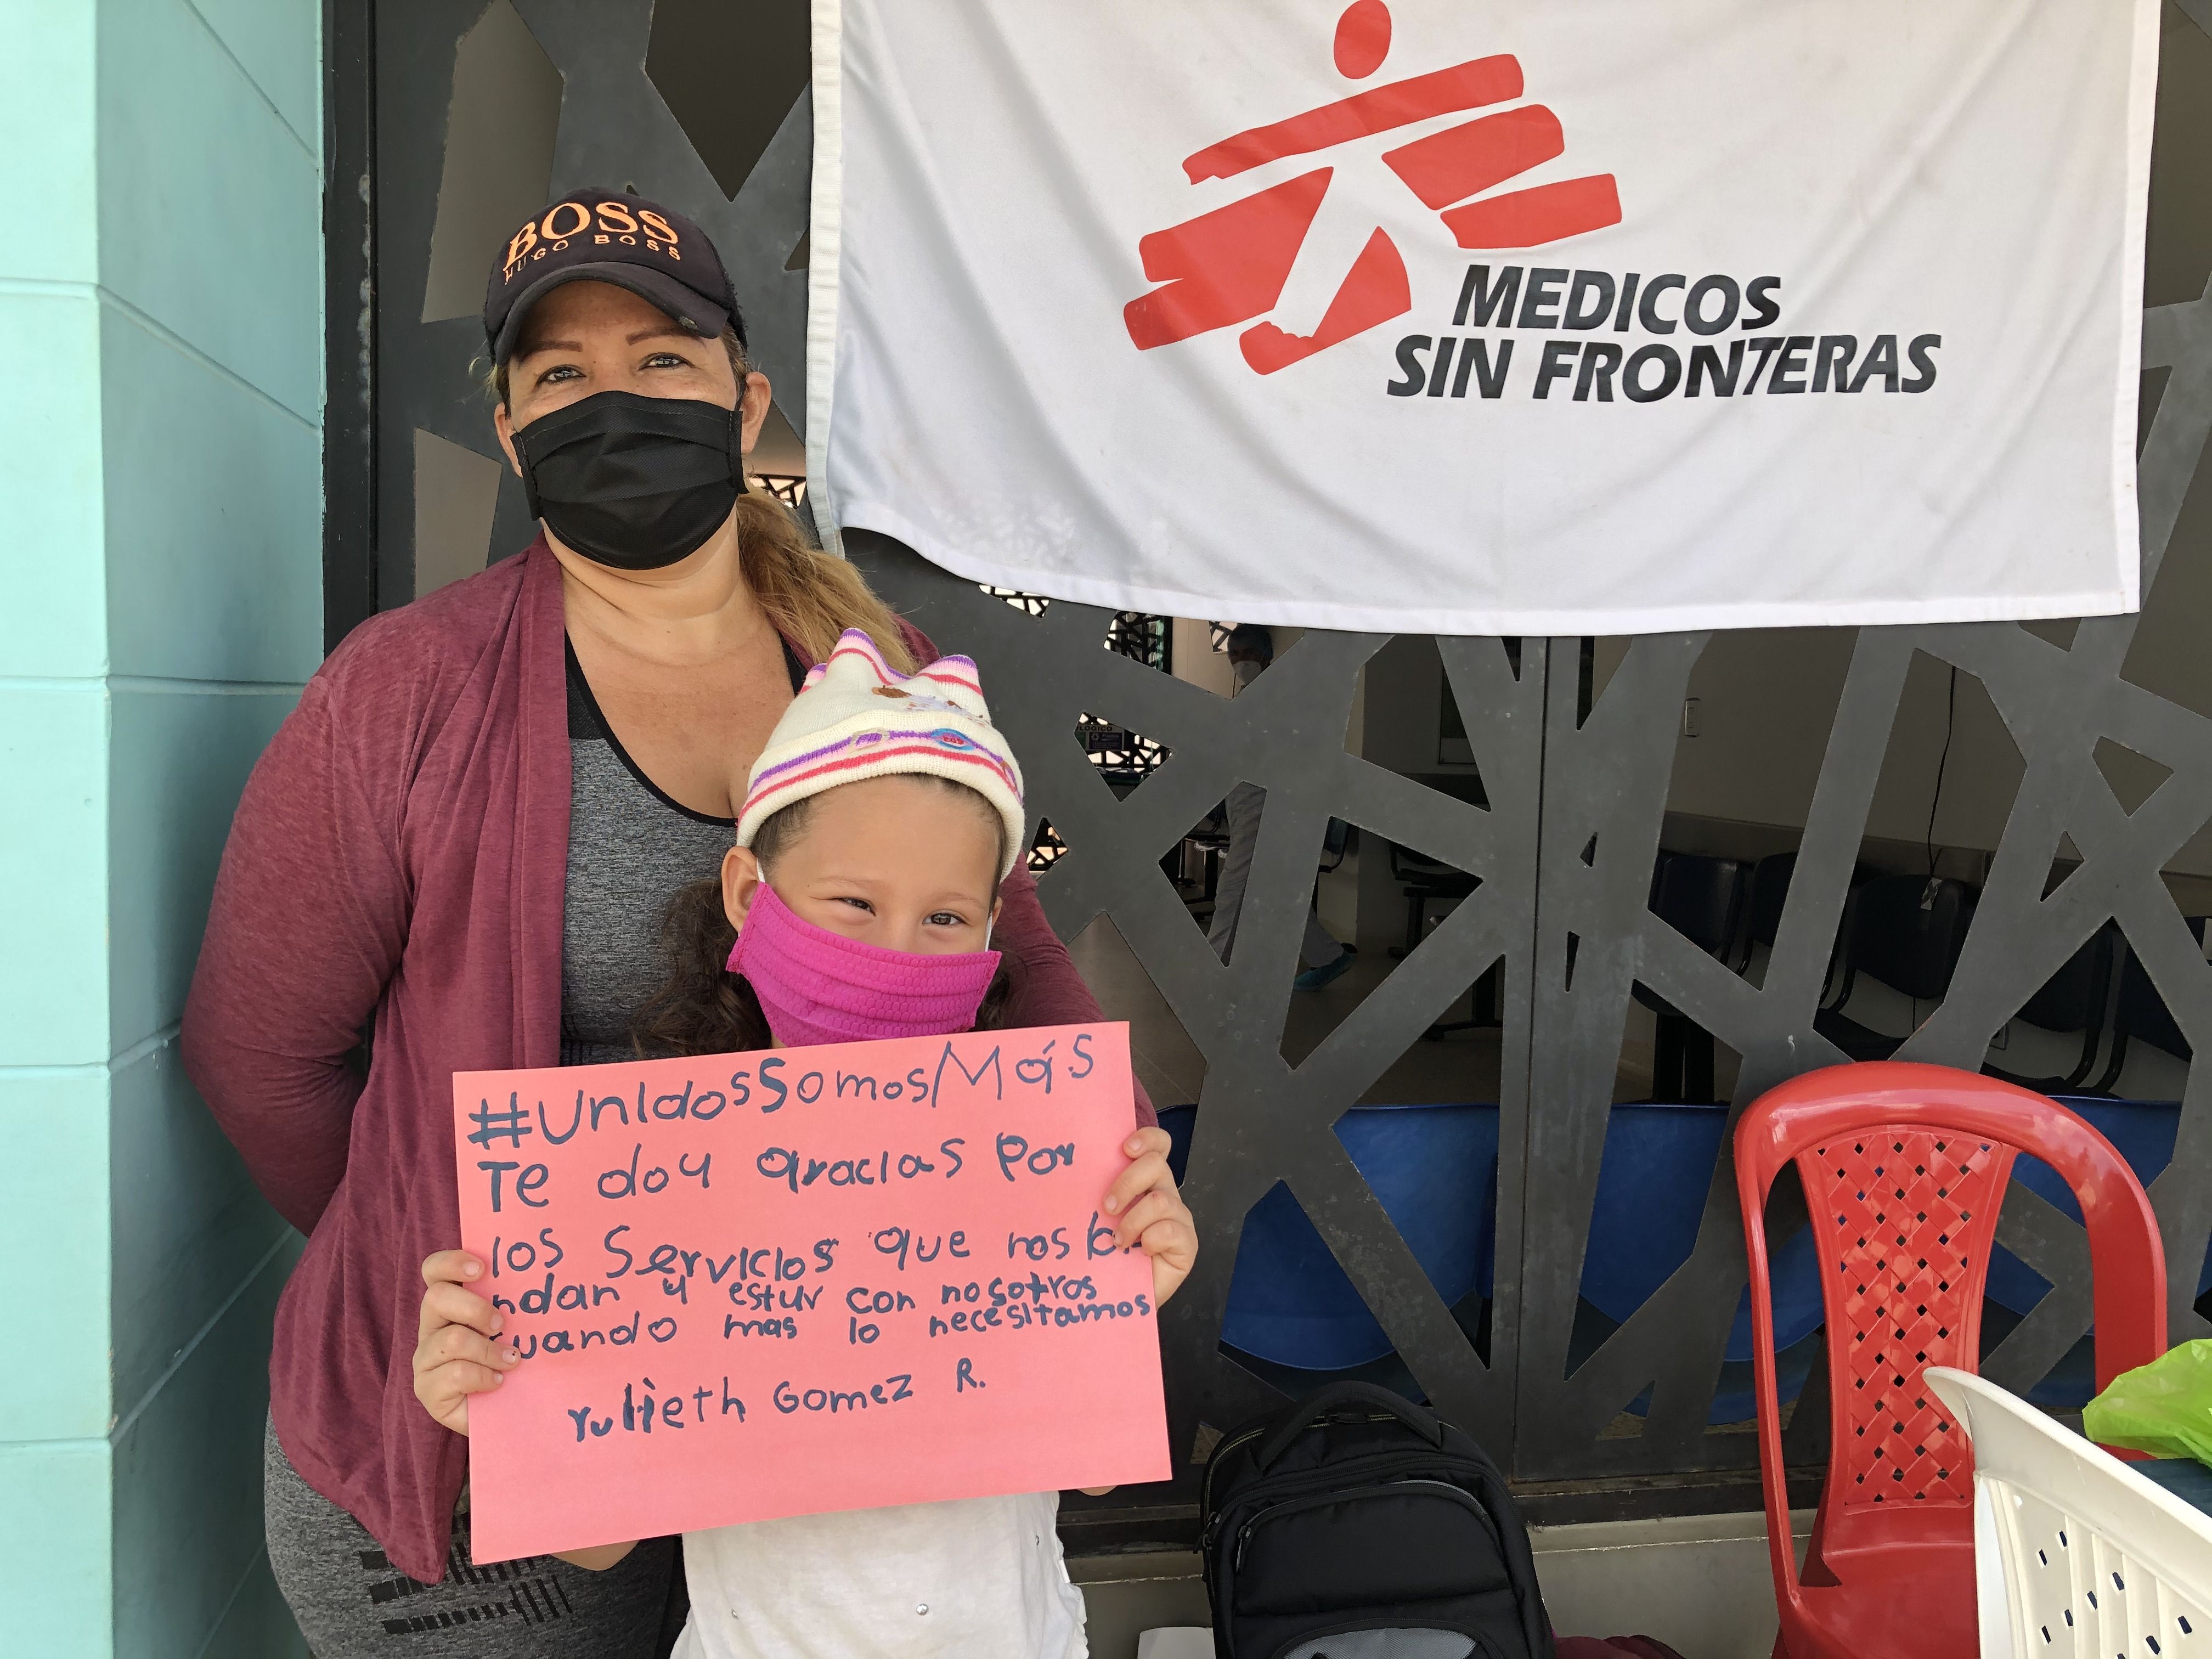 "Te doy gracias por los servicios que nos brindan y estar con nosotros cuando más lo necesitamos", la pequeña Yulieth Gomez agradece con un mensaje, enmarcado en la campaña 'Unidos somos más', el trabajo de los sanitarios. © MSF